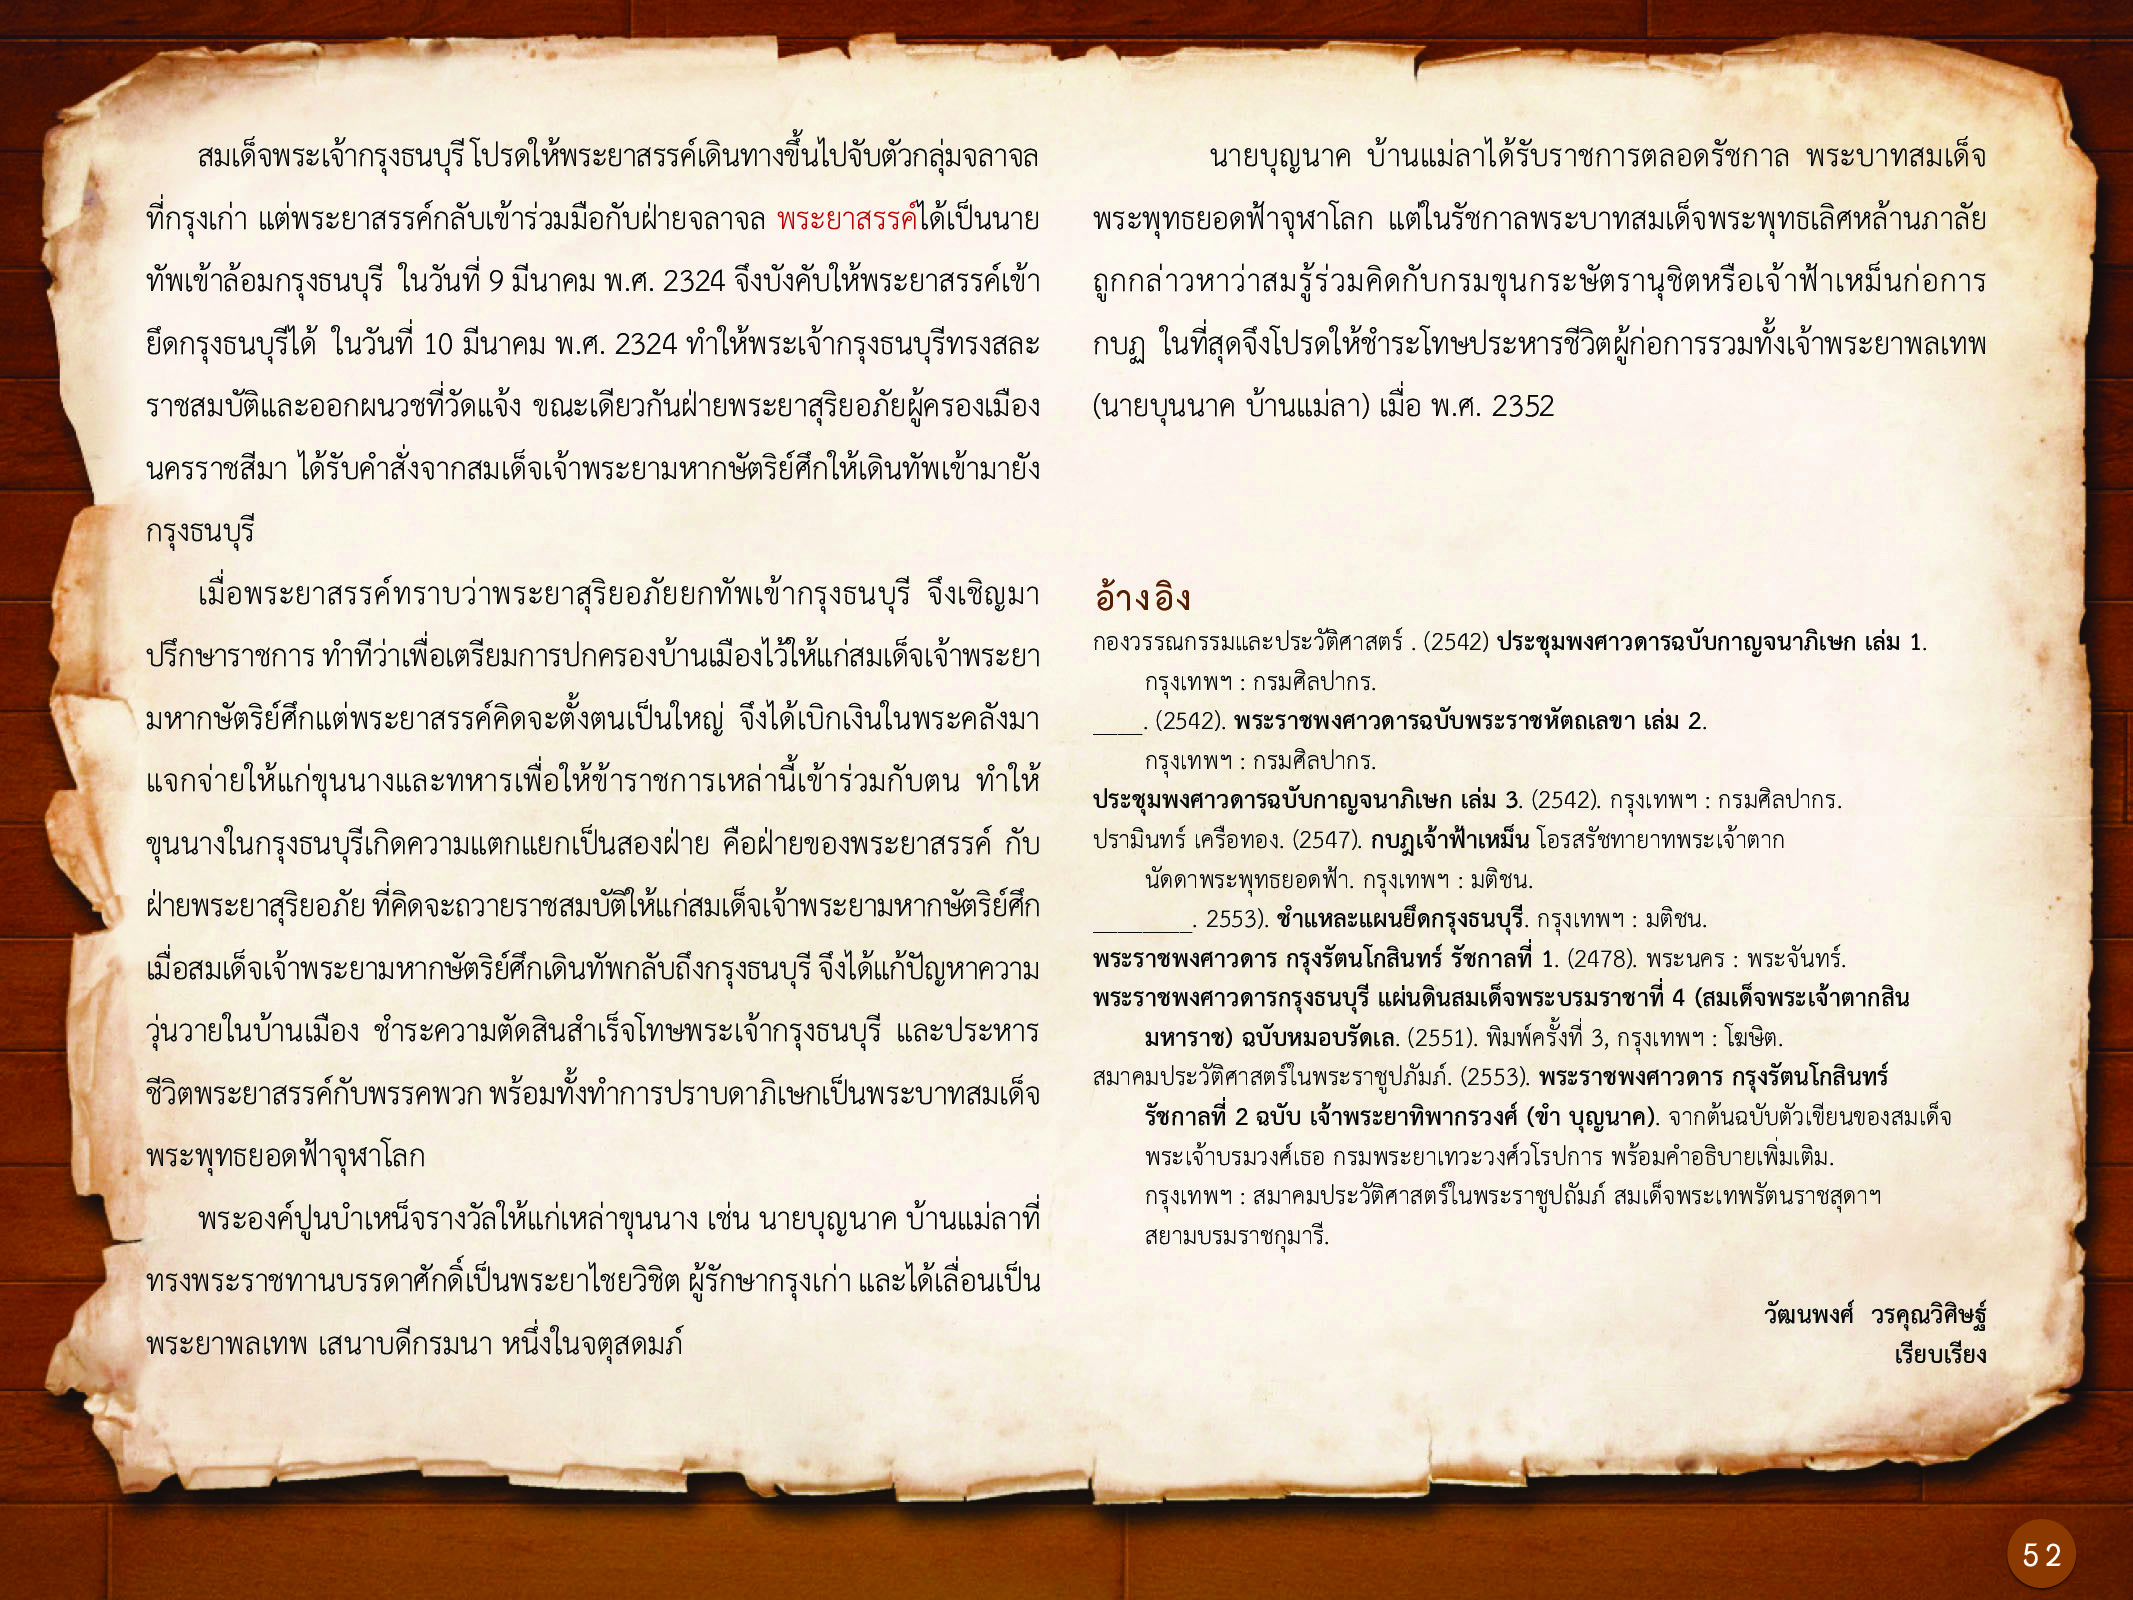 ประวัติศาสตร์กรุงธนบุรี ./images/history_dhonburi/52.jpg